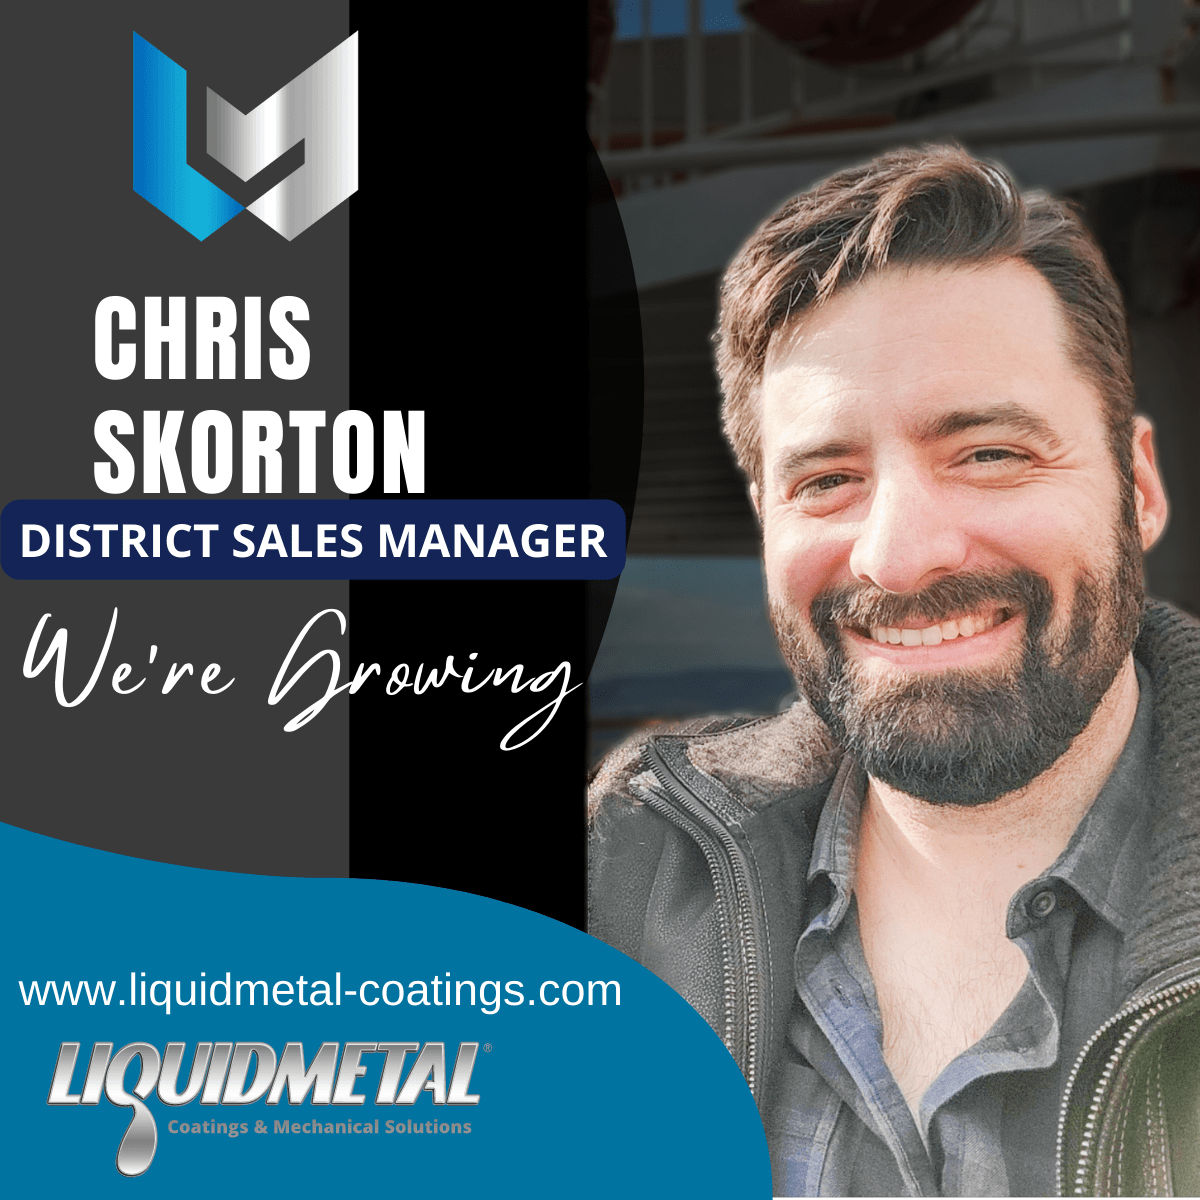 Chris Skorton District Sales Manager